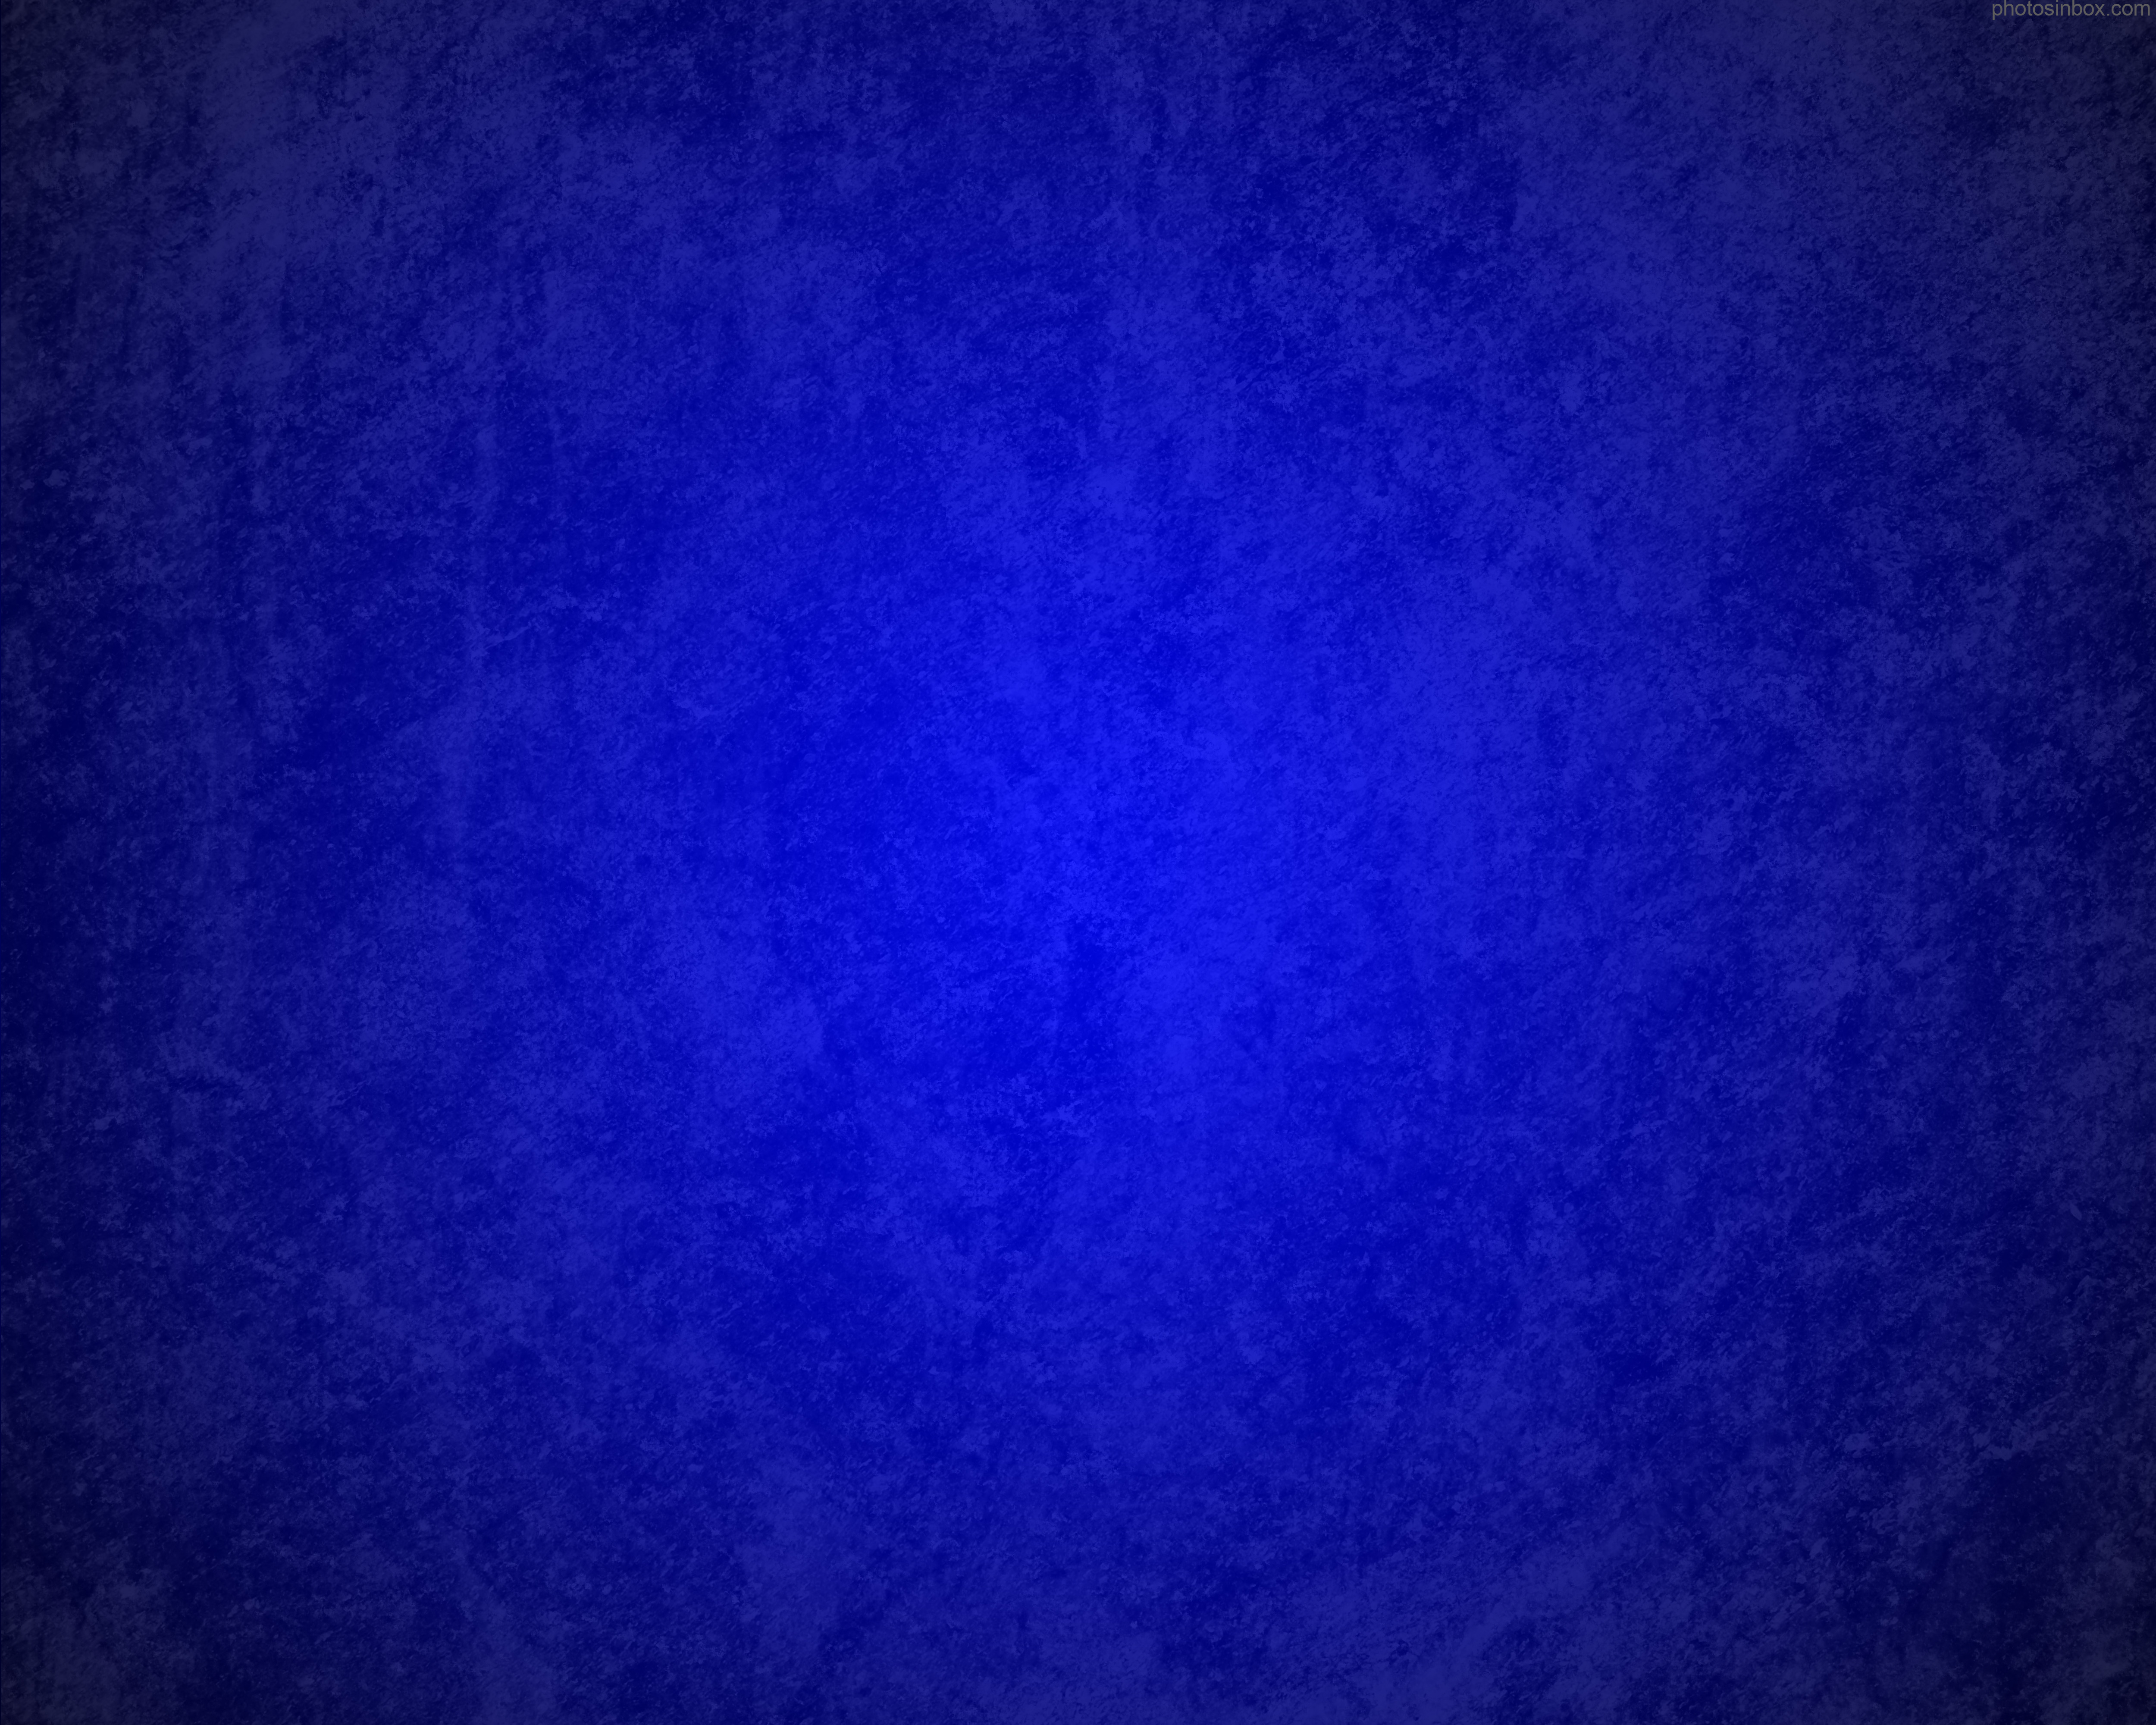 Grunge blue background PhotosInBox